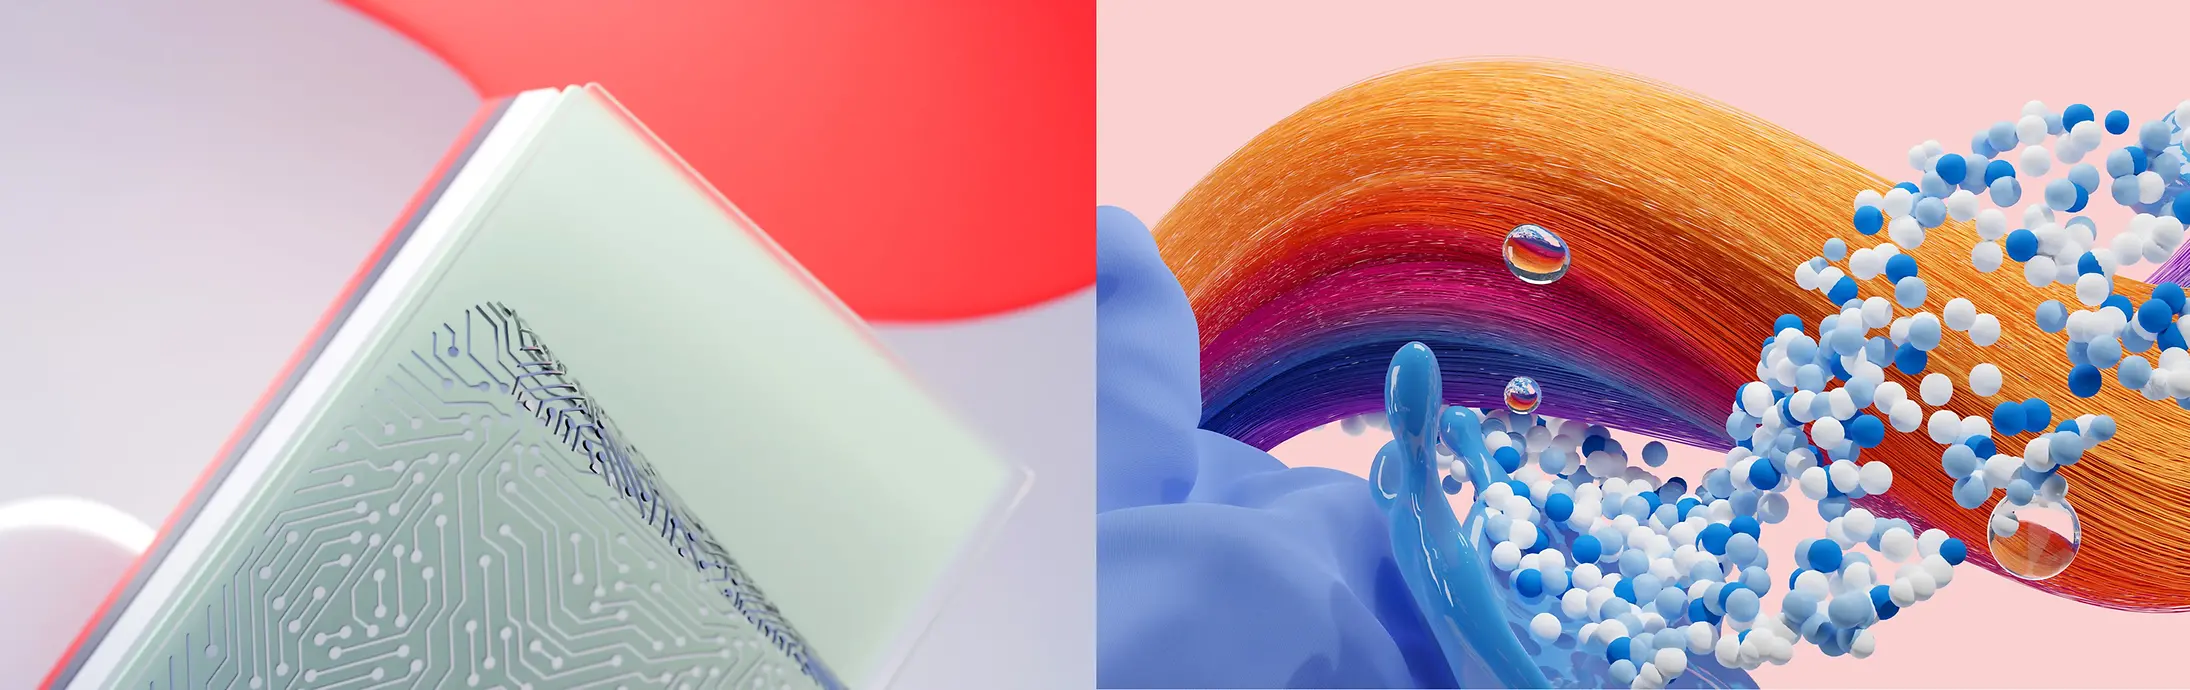 Αφηρημένη εικόνα που αναπαριστά τους τομείς της Henkel Τεχνολογίες συγκόλλησης, Hair και Laundry & Home Care.